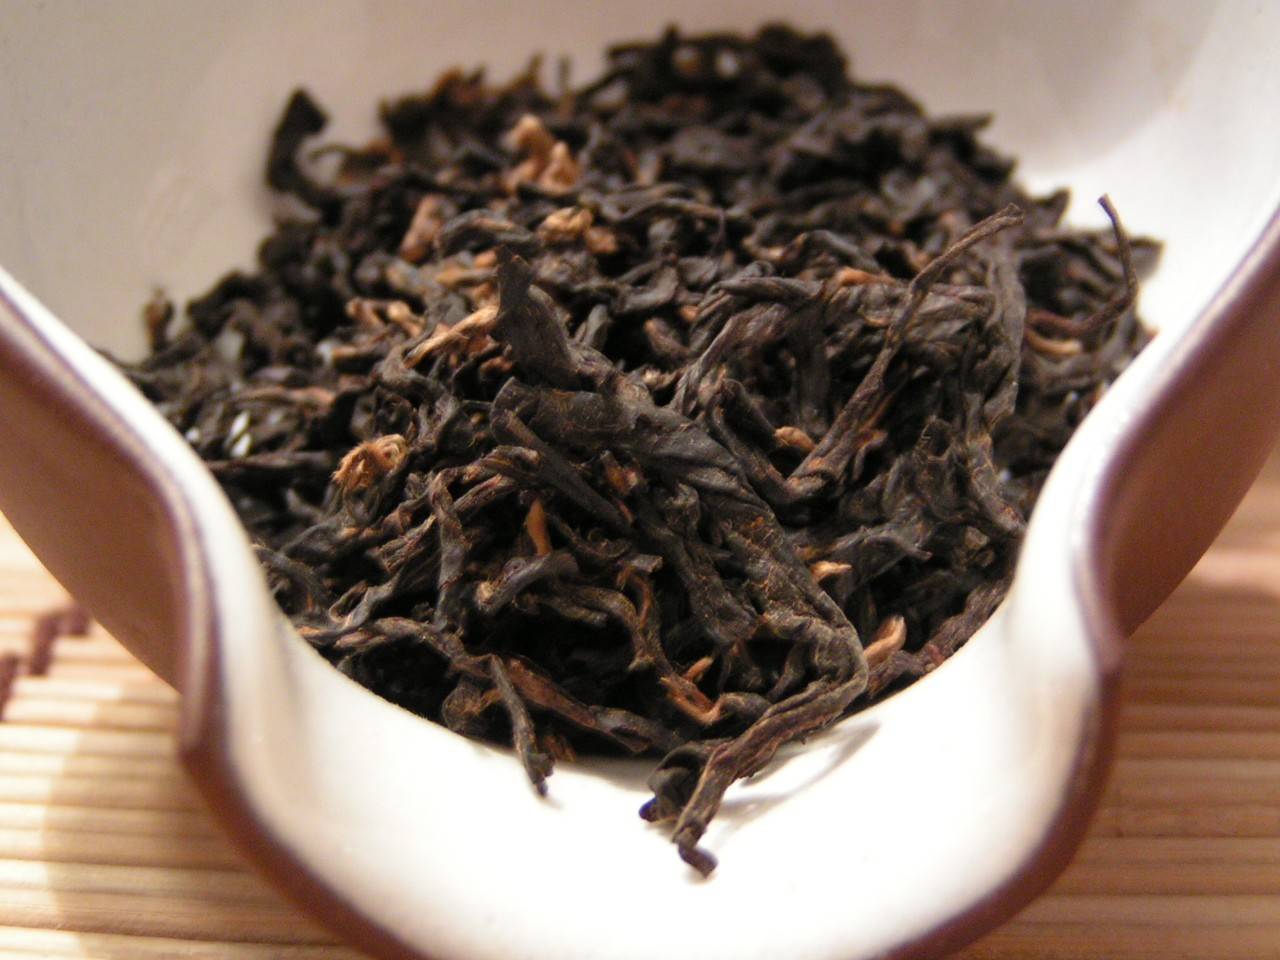 Виды чая и их свойства – какой чай самый полезный и вкусный?